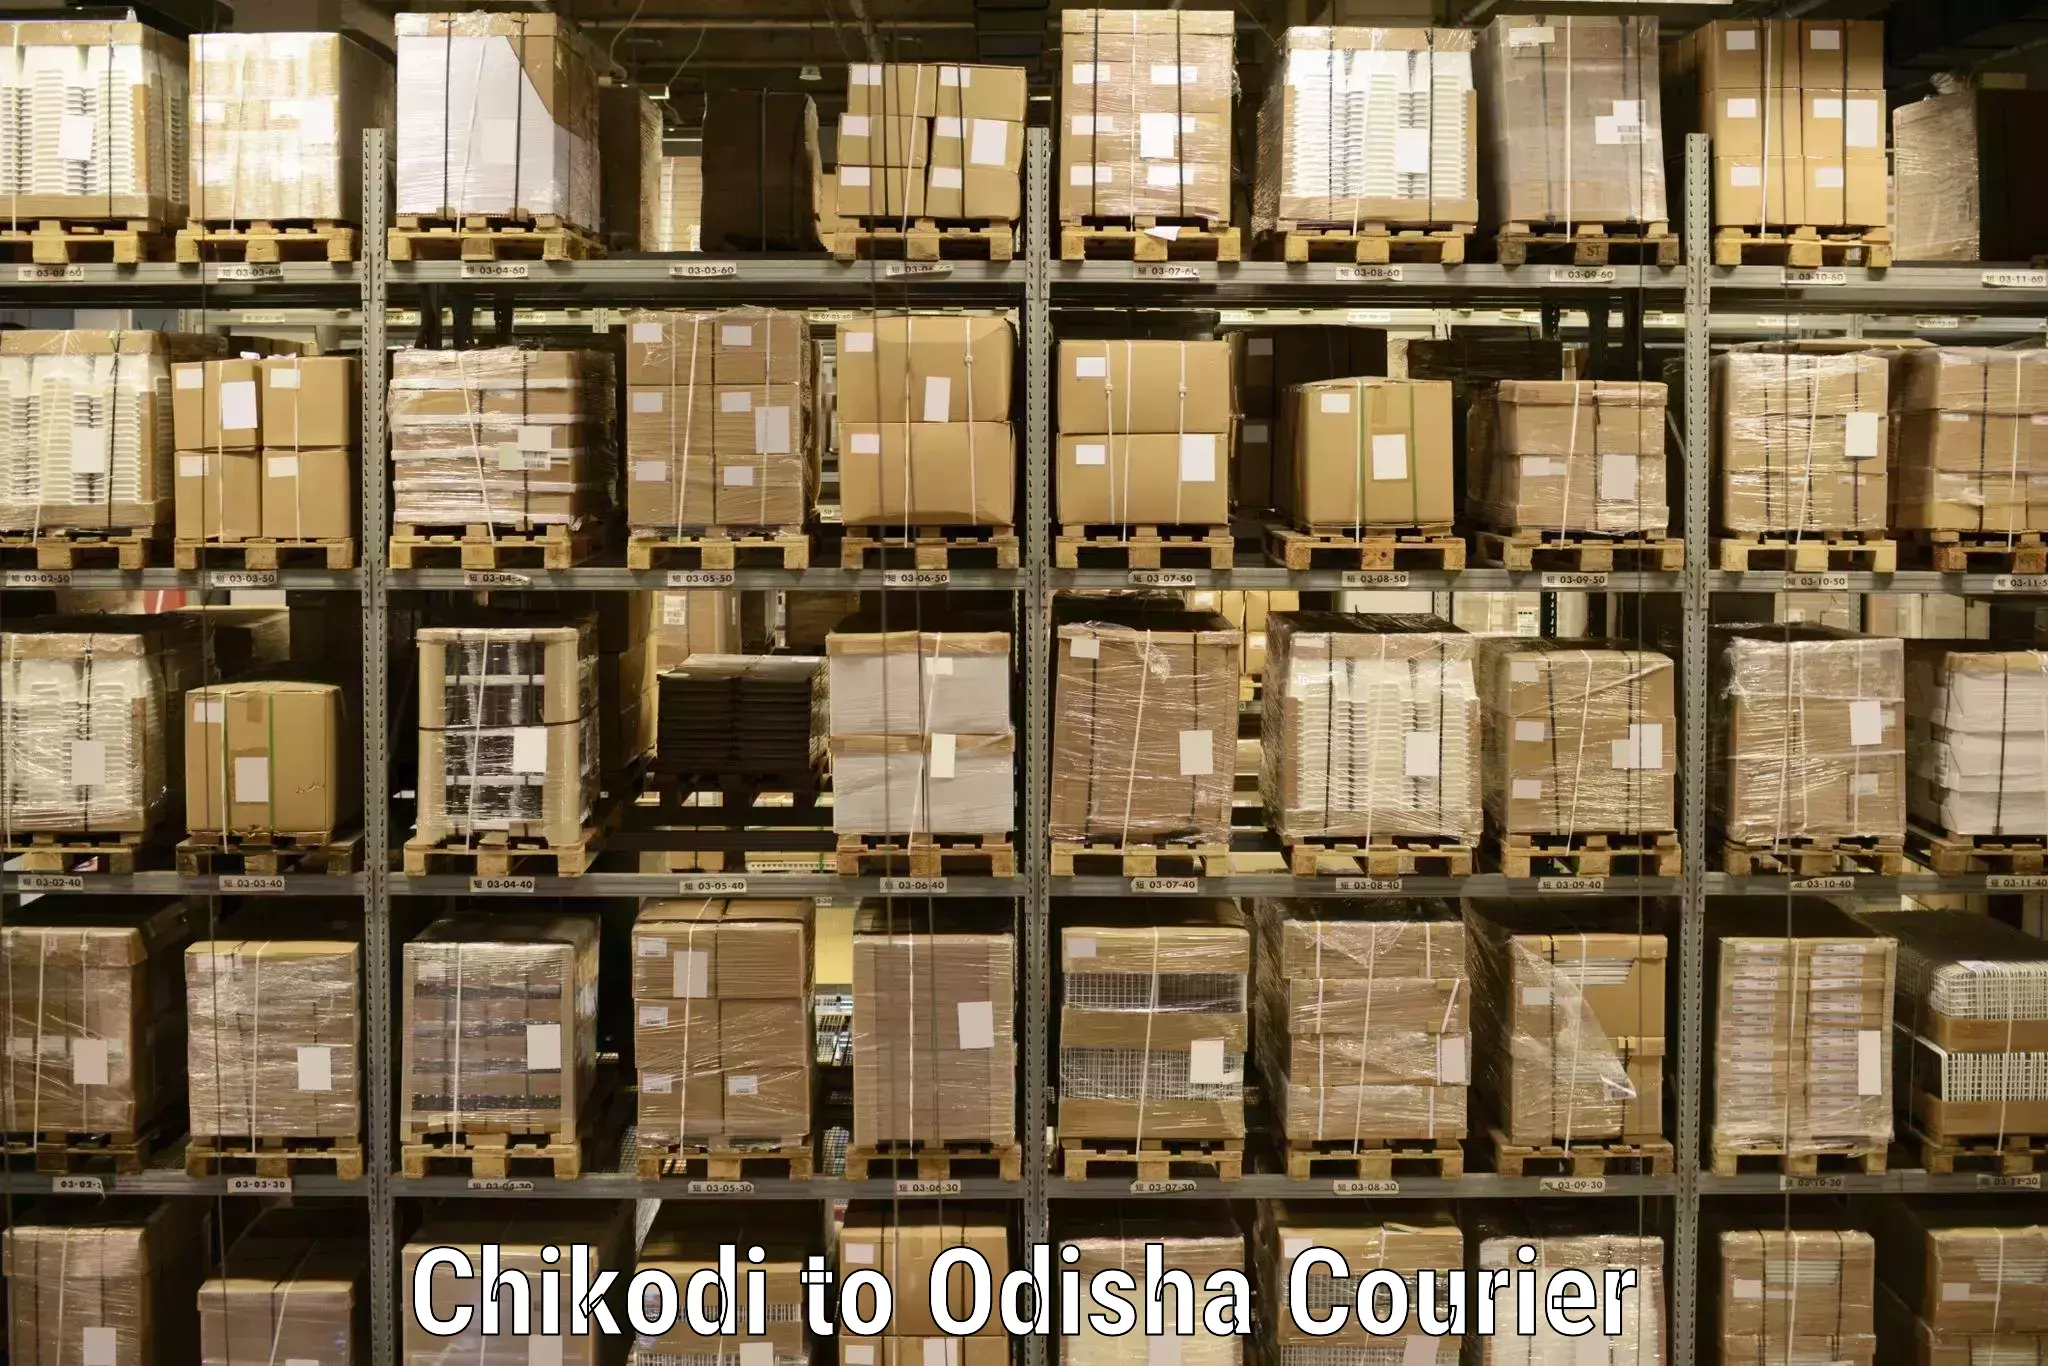 Professional courier handling Chikodi to Malkangiri